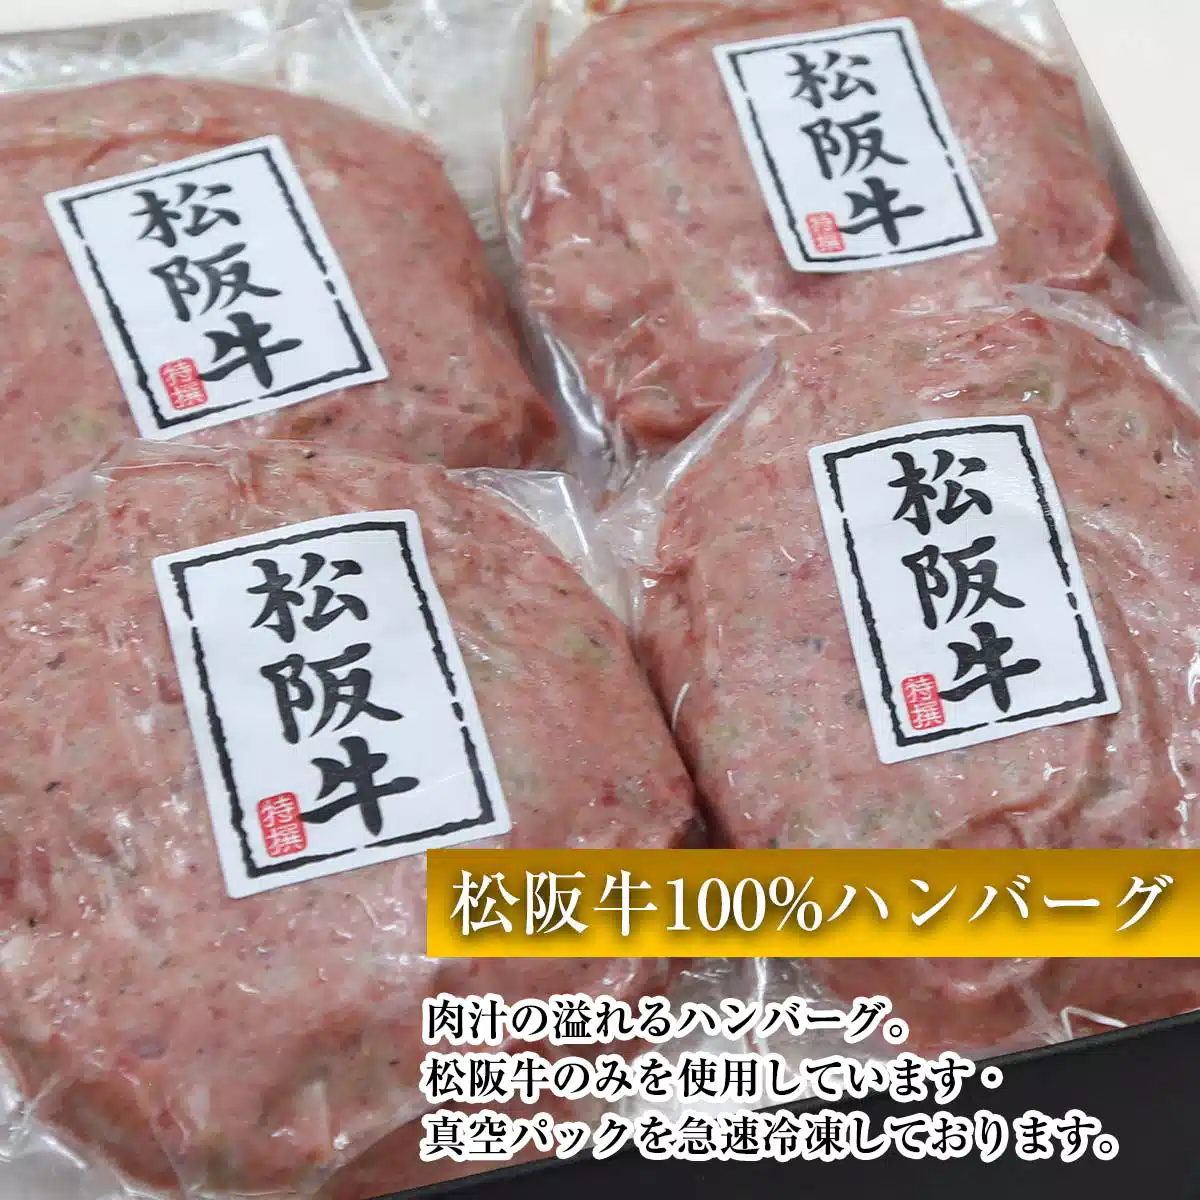 松阪牛ハンバーグ4個+冷麺4食セット